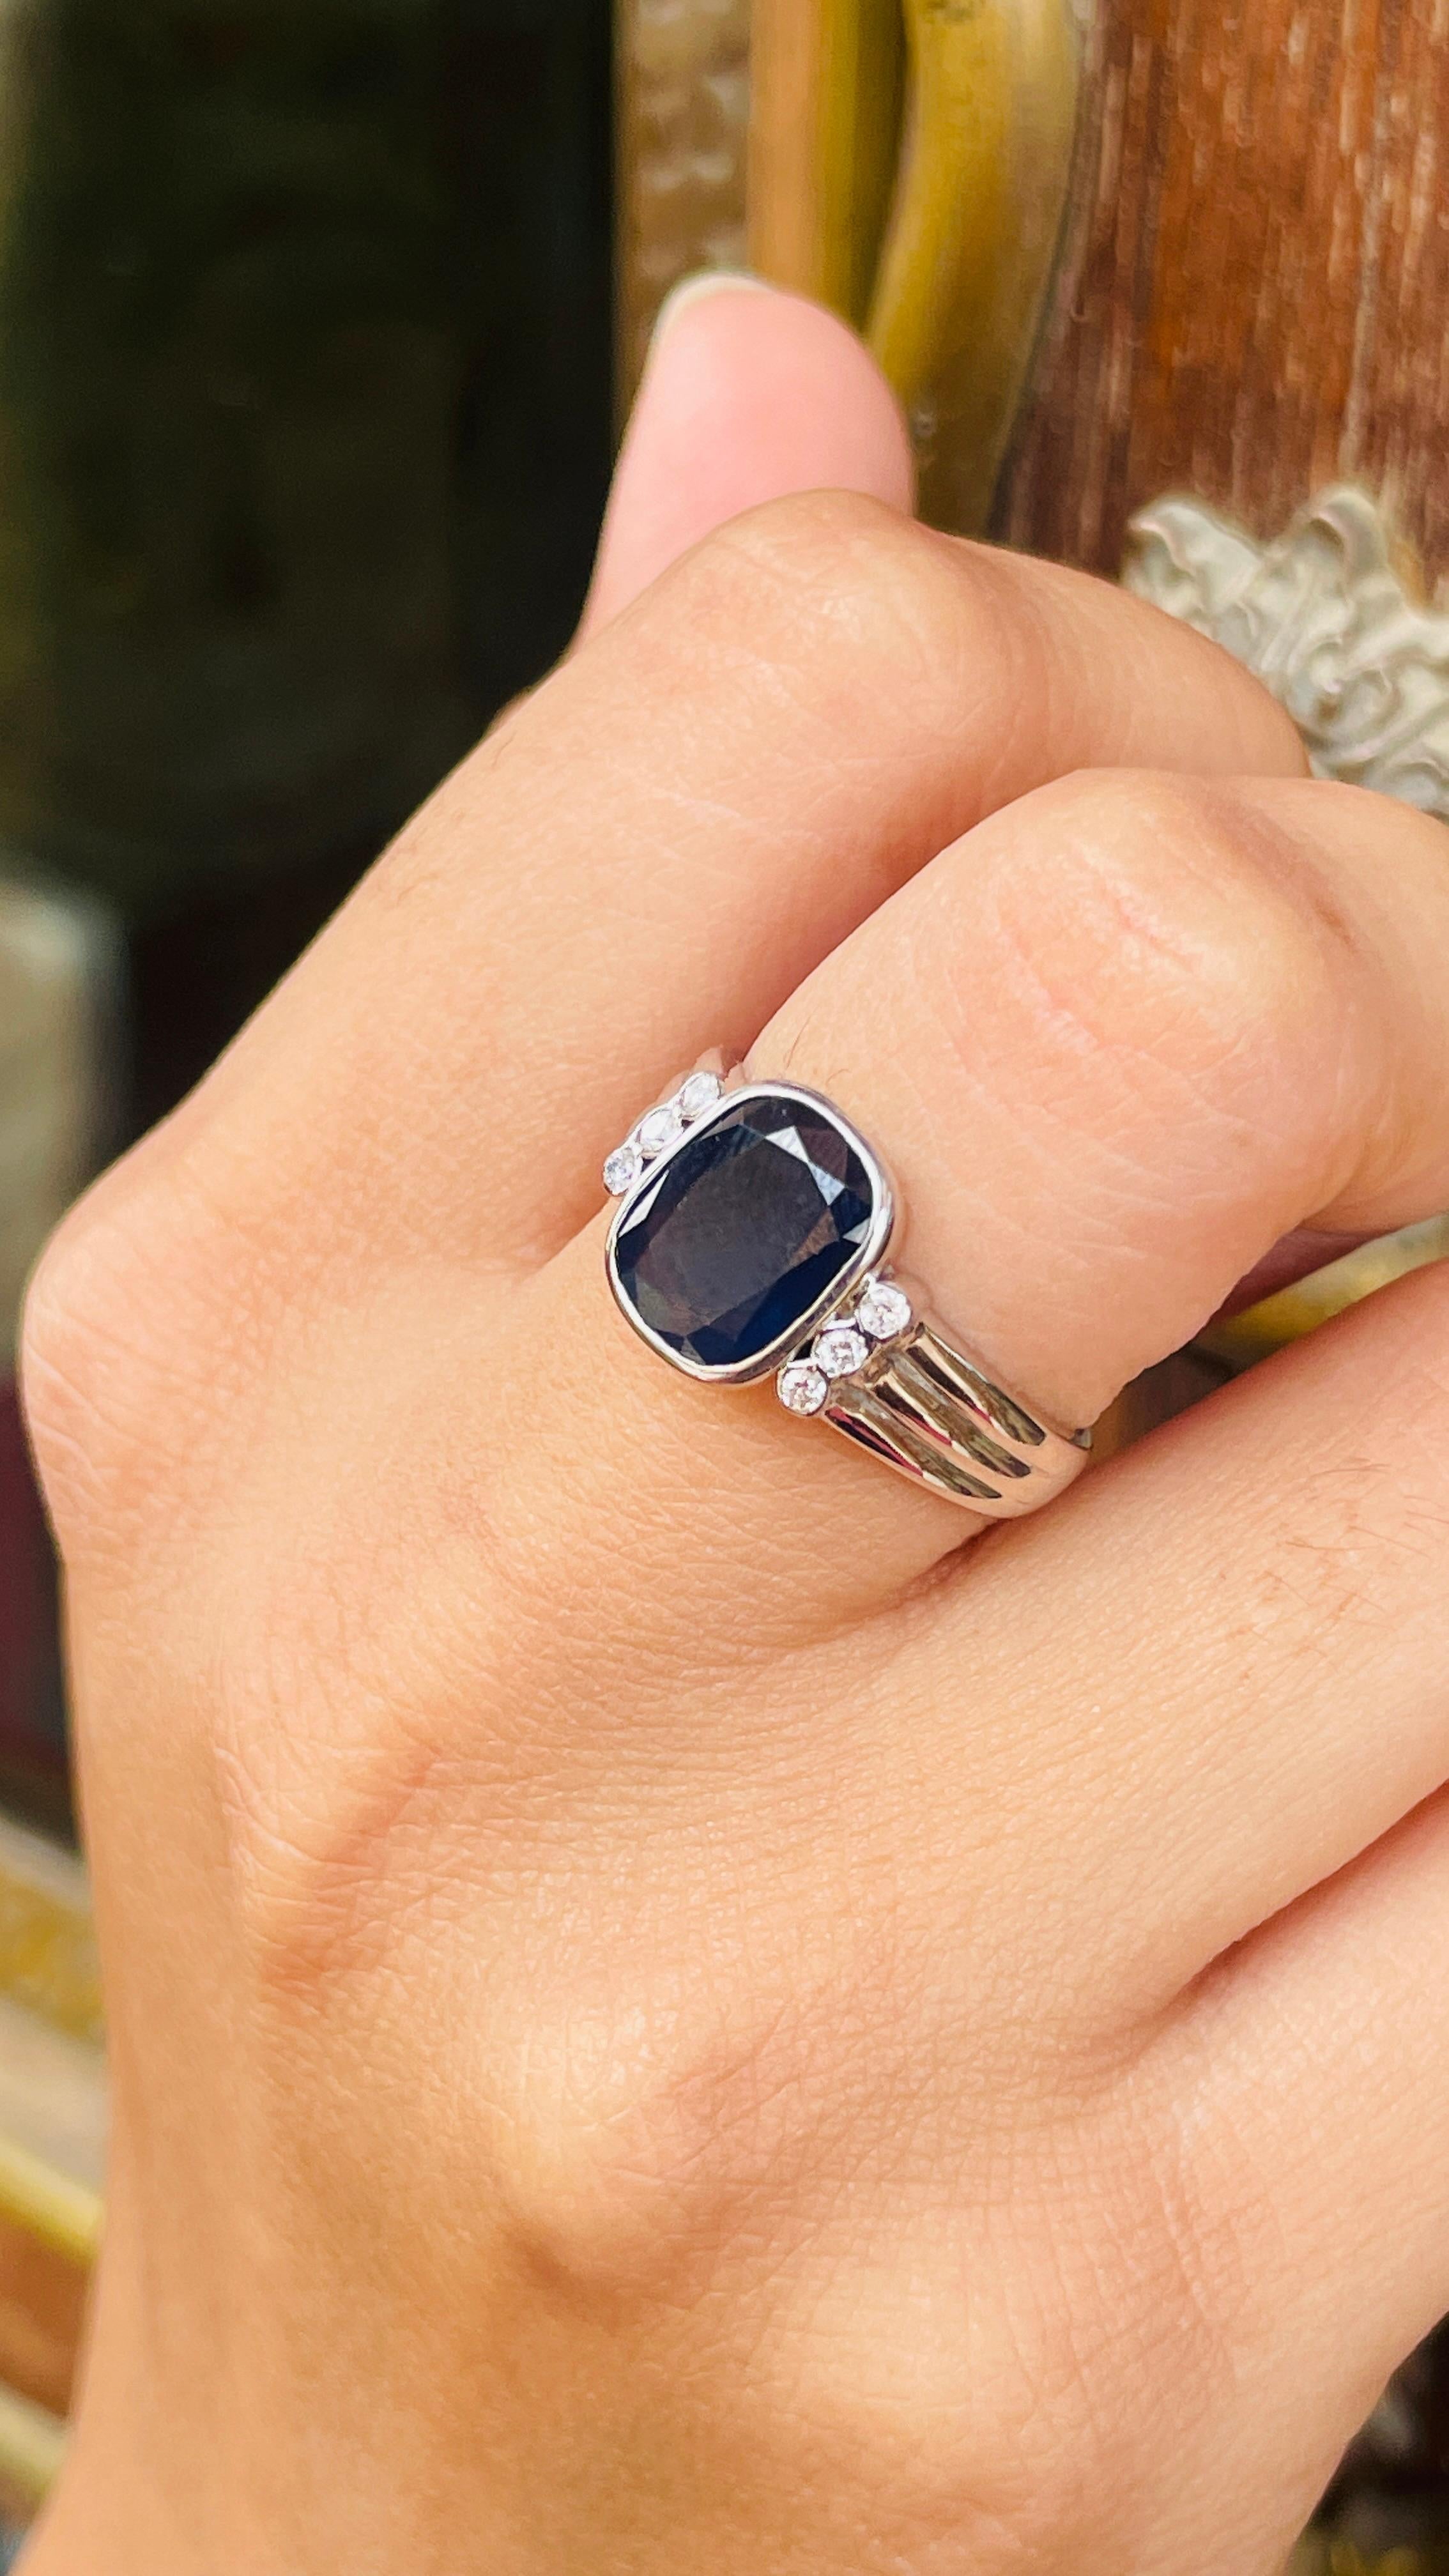 Ring mit blauem Saphir und Diamanten aus 18 Karat Gold mit einem natürlichen Saphir von 2,74 Karat und Diamanten von 0,12 Karat. Der wunderschöne handgefertigte Ring passt zu jedem Stil.
Der Saphir fördert die Konzentration und baut Stress